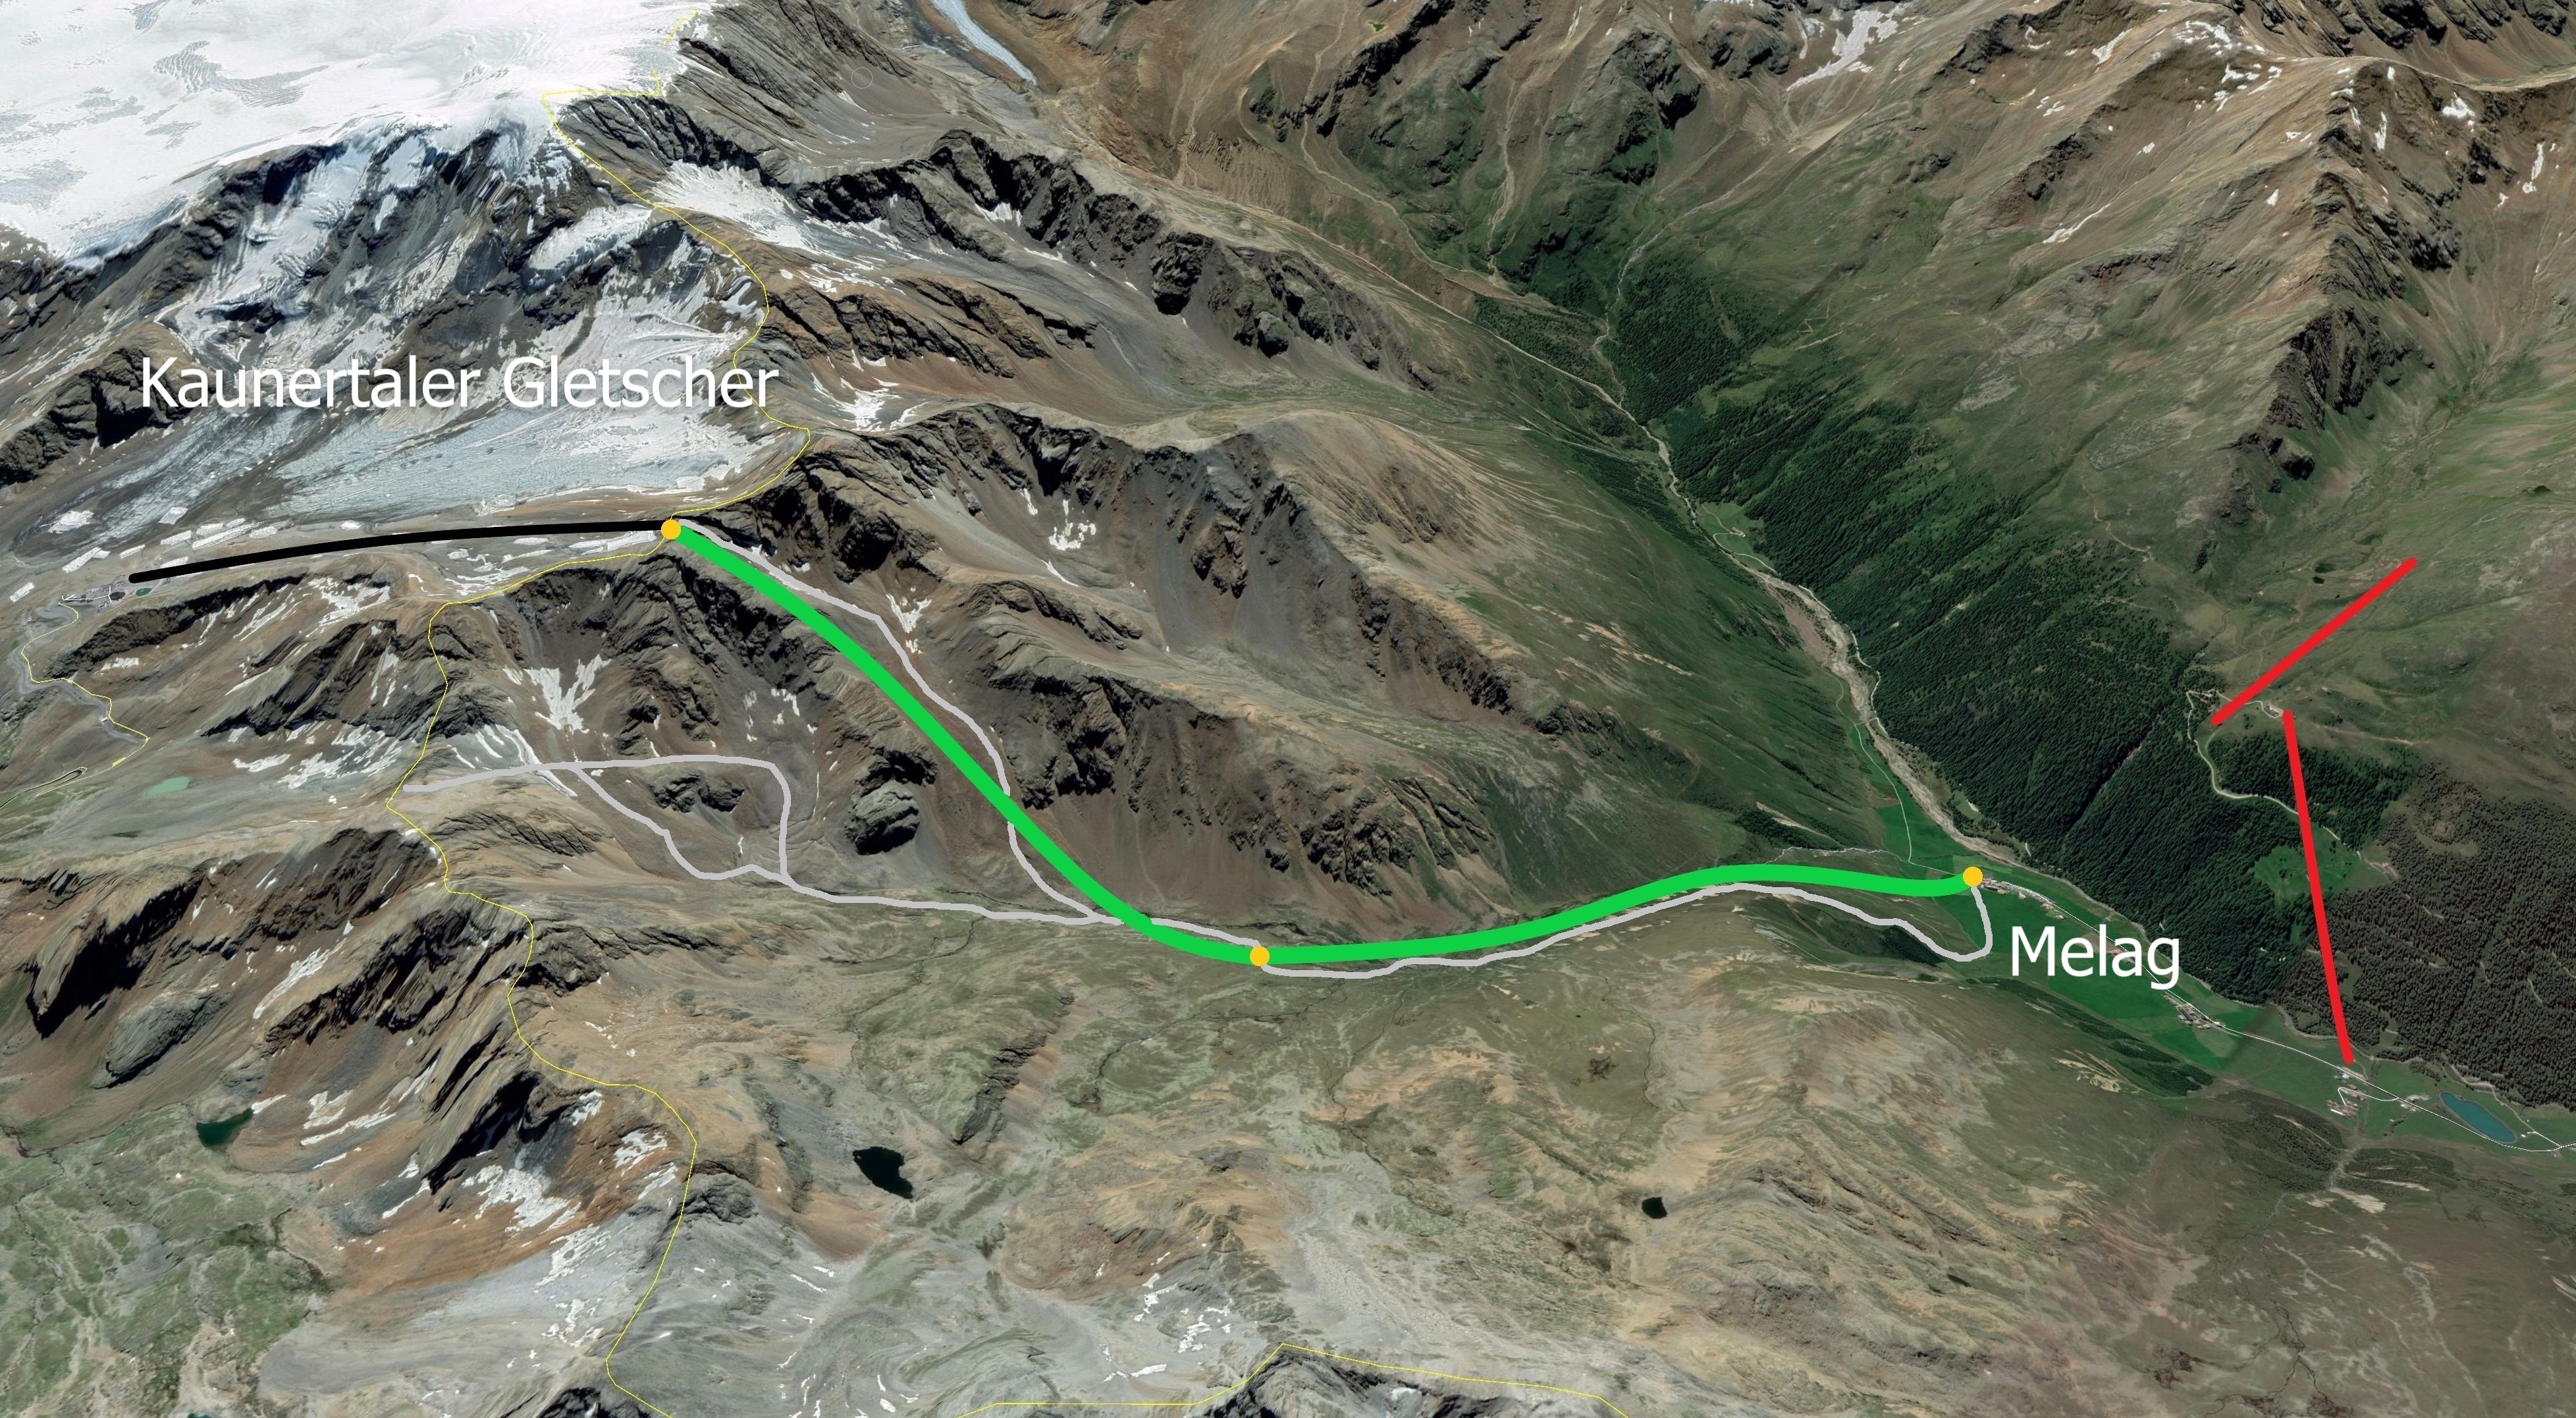 In het groen de geplande gondel vanuit Melag naar de grens tussen Oostenrijk en Italië bij de Karlesjoch en in het grijs de mogelijke pistes (links = Weißseejoch optie, onder de geplande gondel = Karlesjoch optie). In het zwart de Karlesjochbahn en in het rood de gesloten skiliften in Maseben